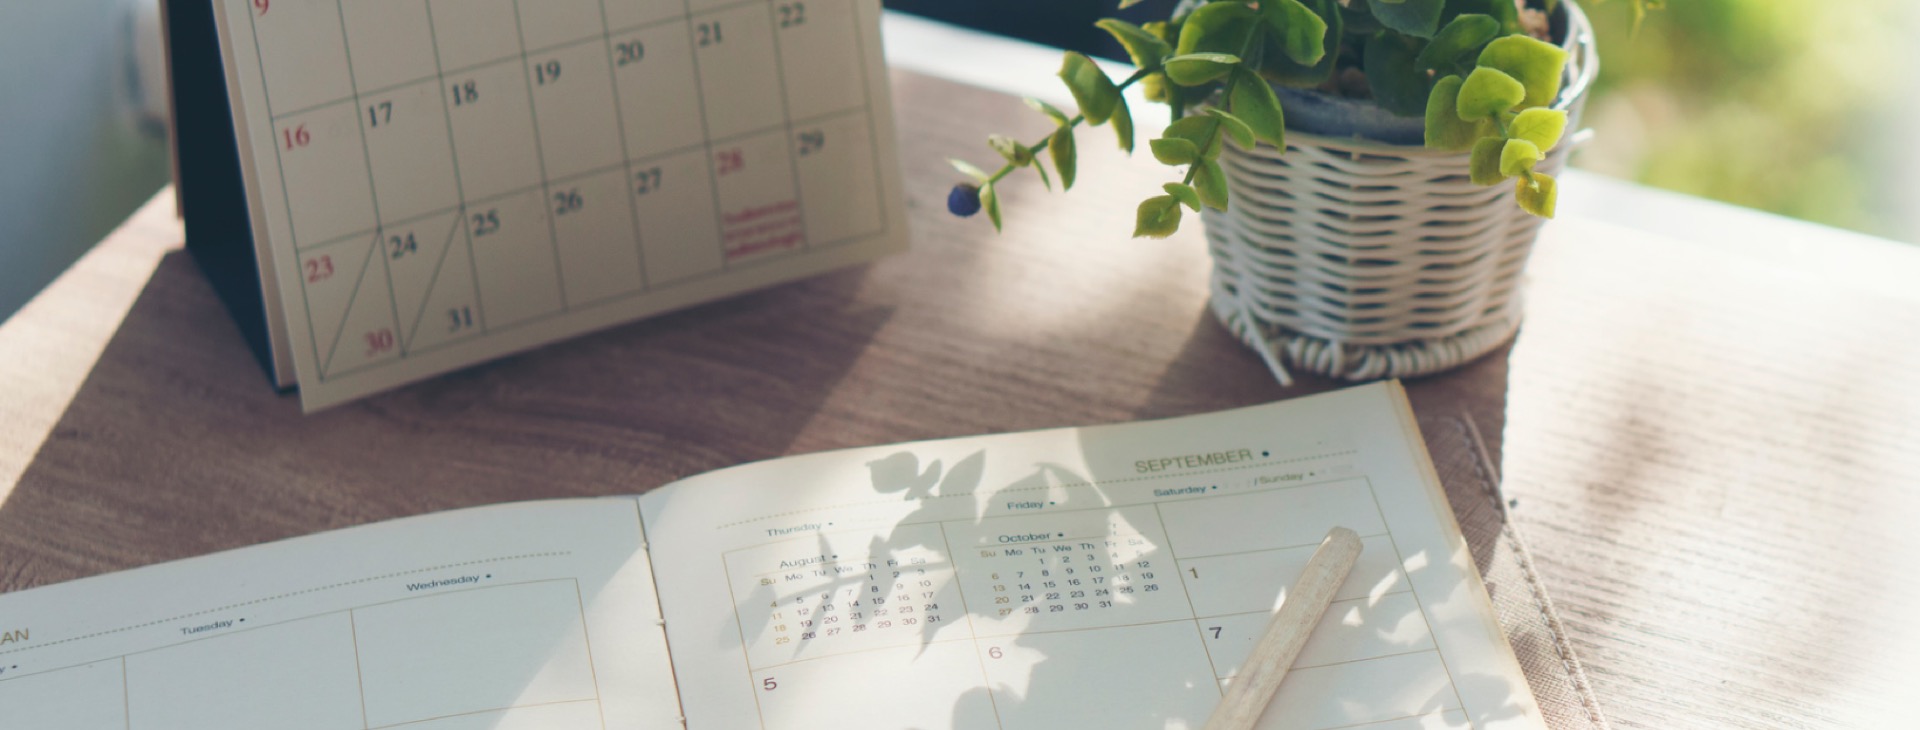 Ein Terminkalender, ein Notizbuch und eine Topfpflanze auf einem hellen Tisch.